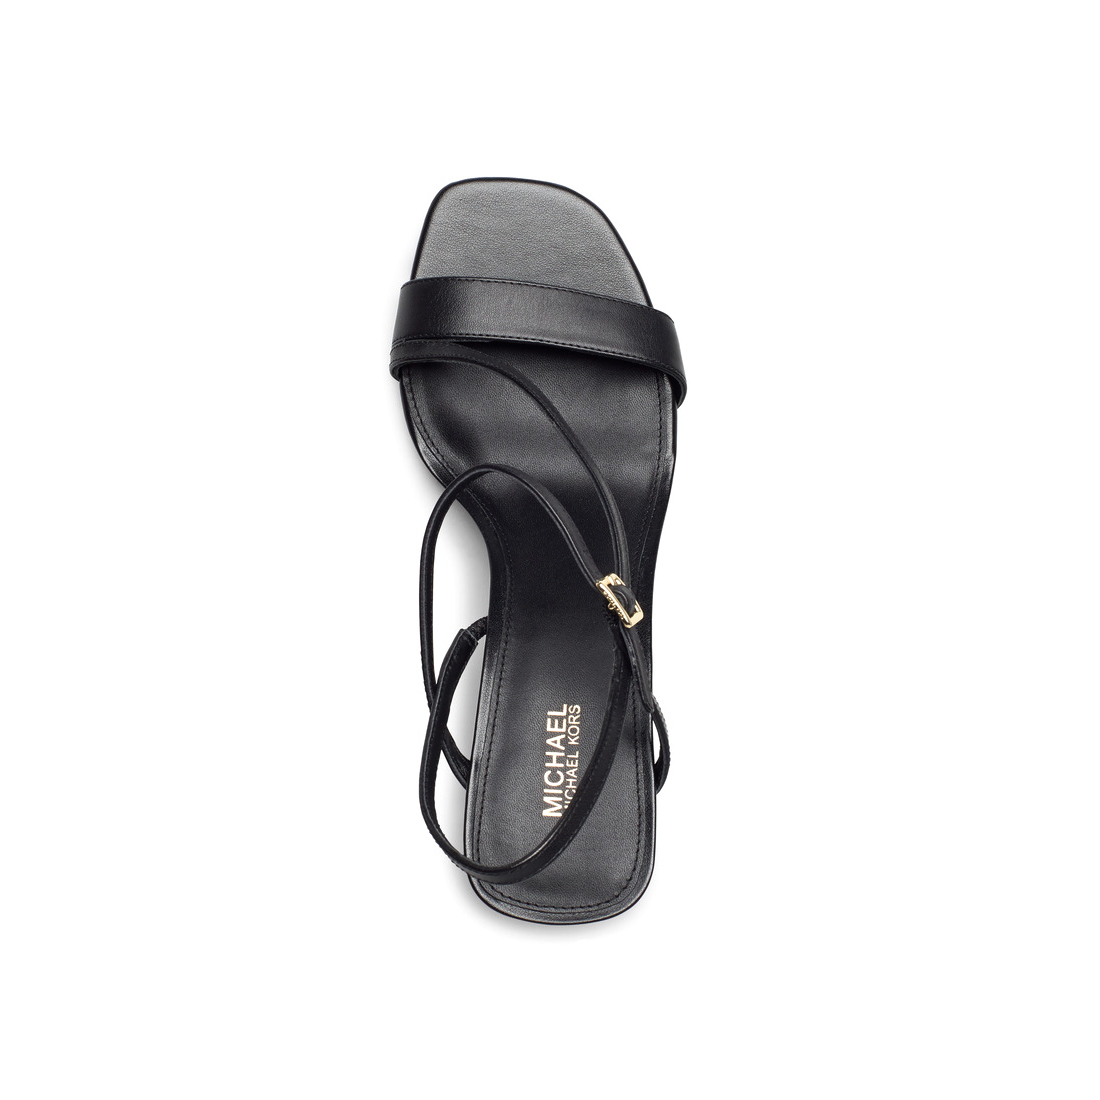 Michael Kors Tasha zwarte leren sandaal met hak